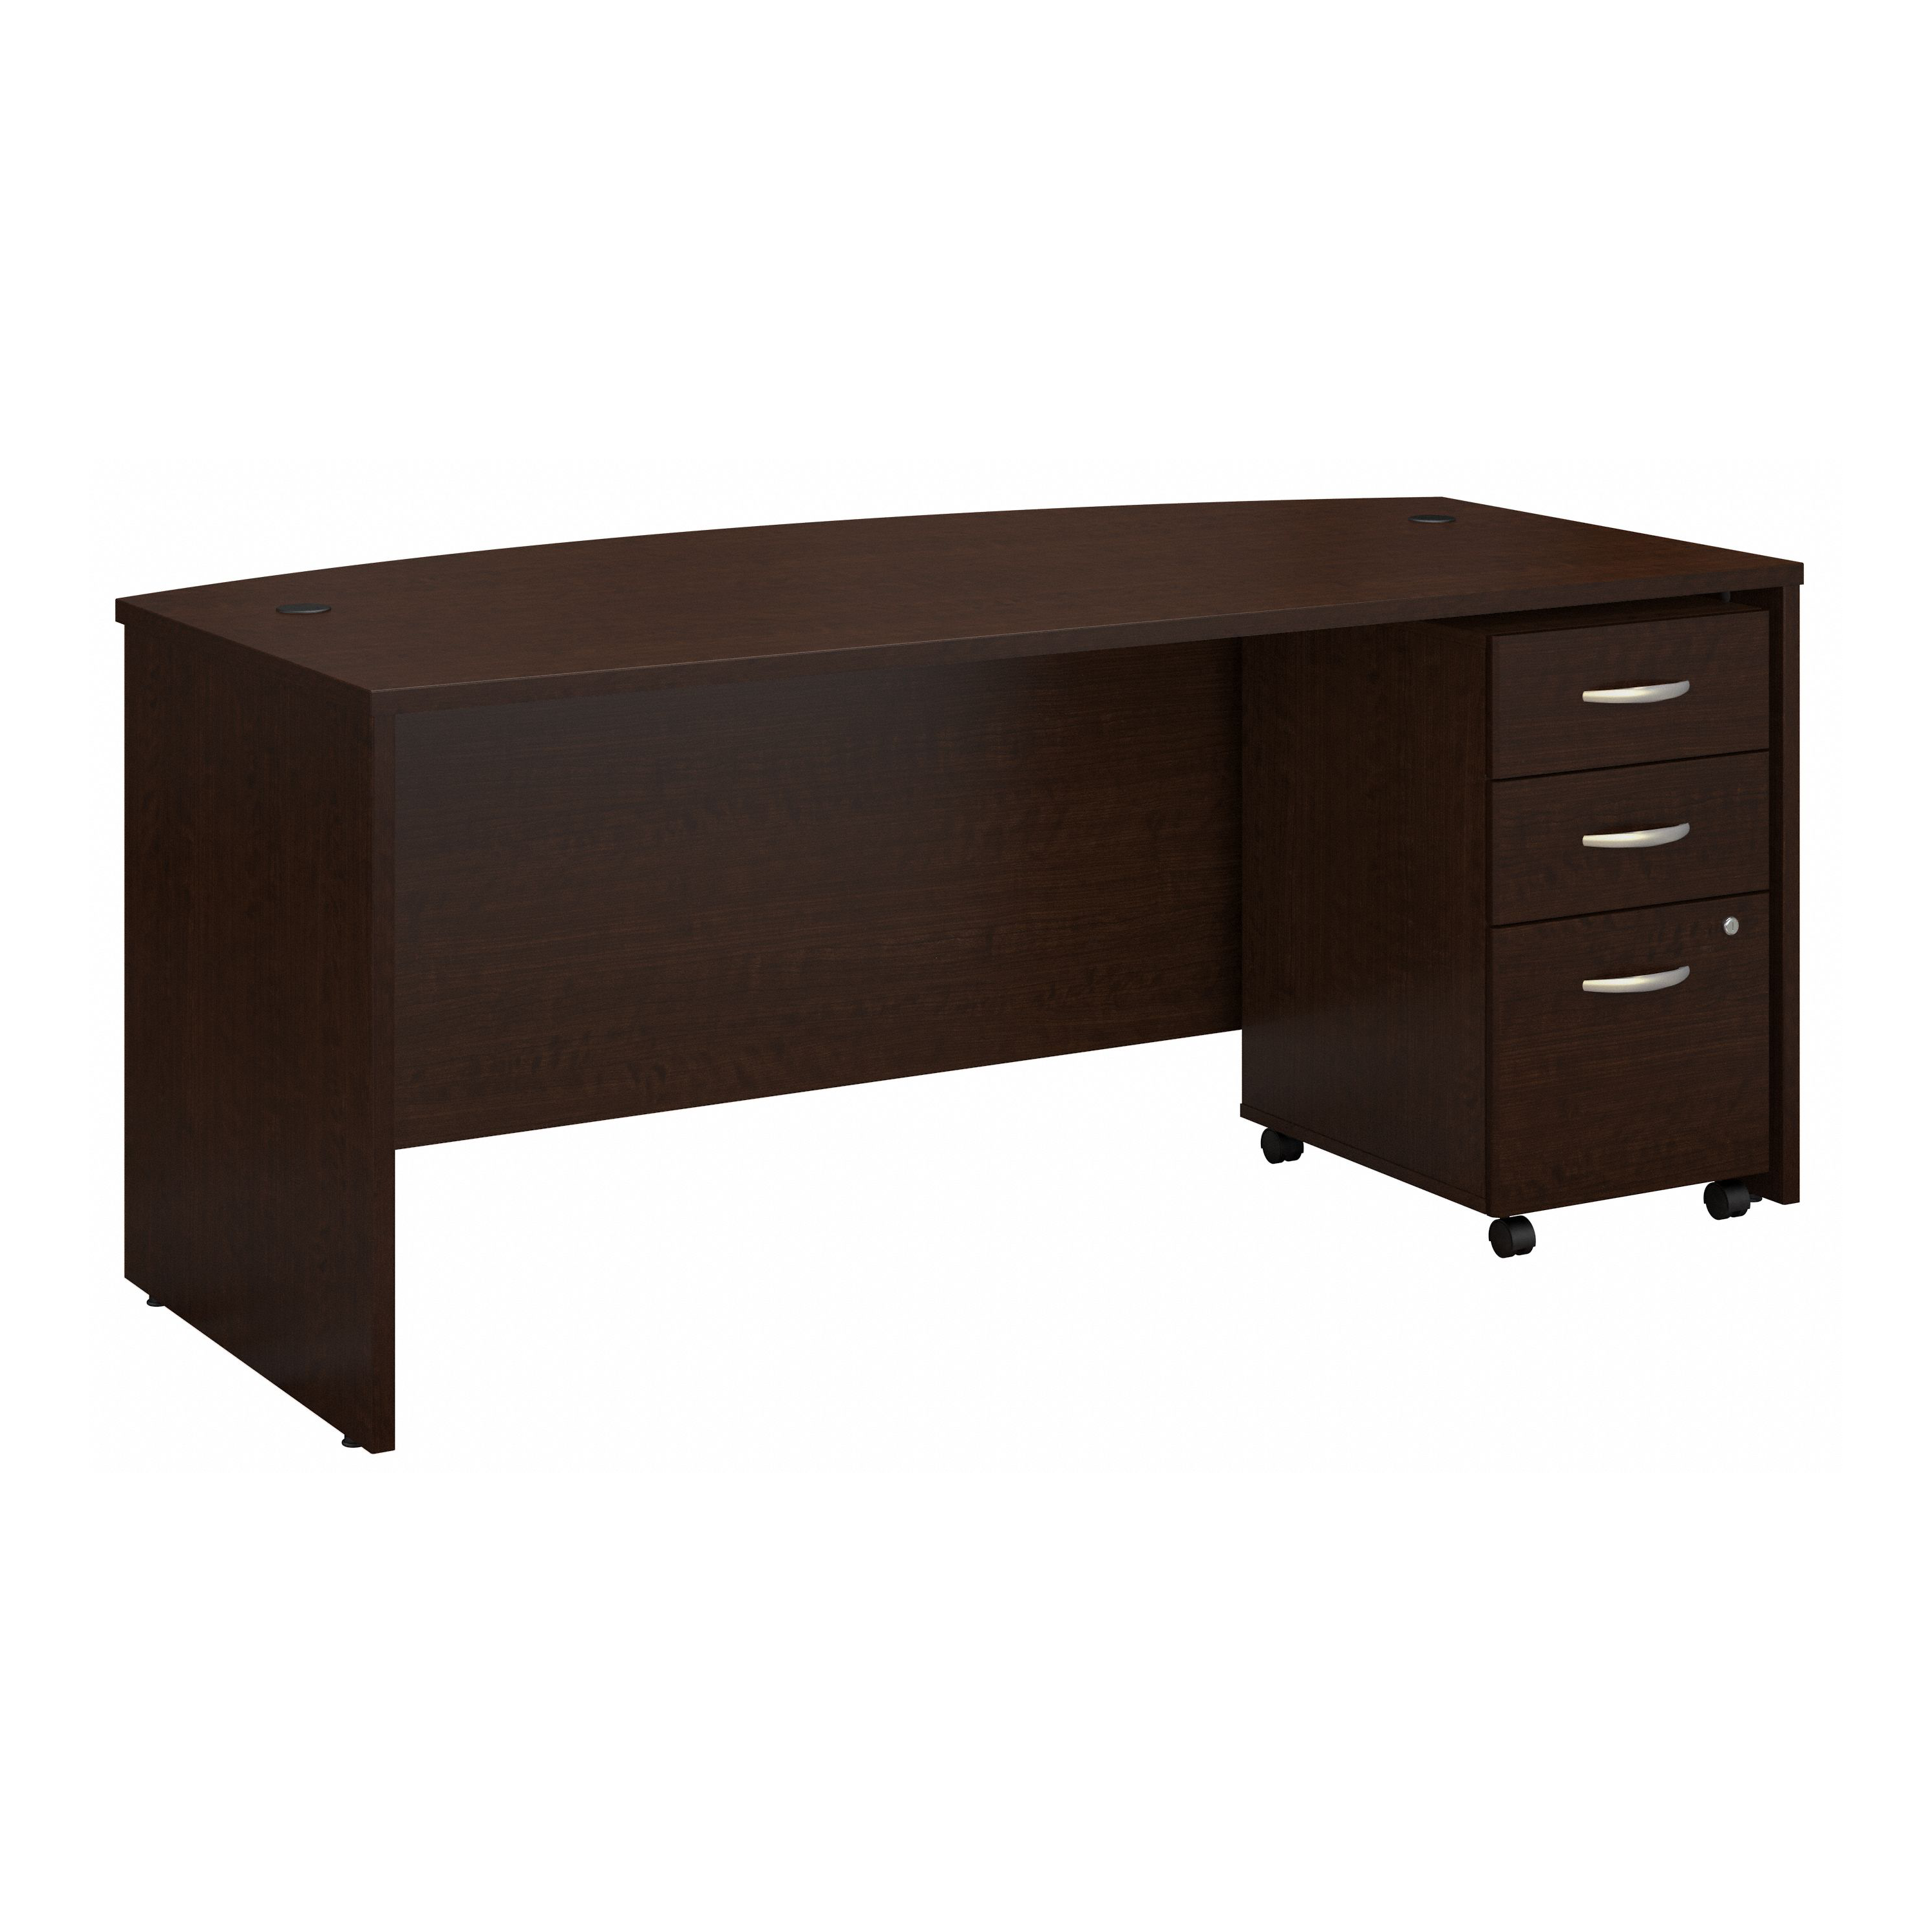 Shop Bush Business Furniture Series C 72W x 36D Bow Front Desk with Mobile File Cabinet 02 SRC079MRSU #color_mocha cherry